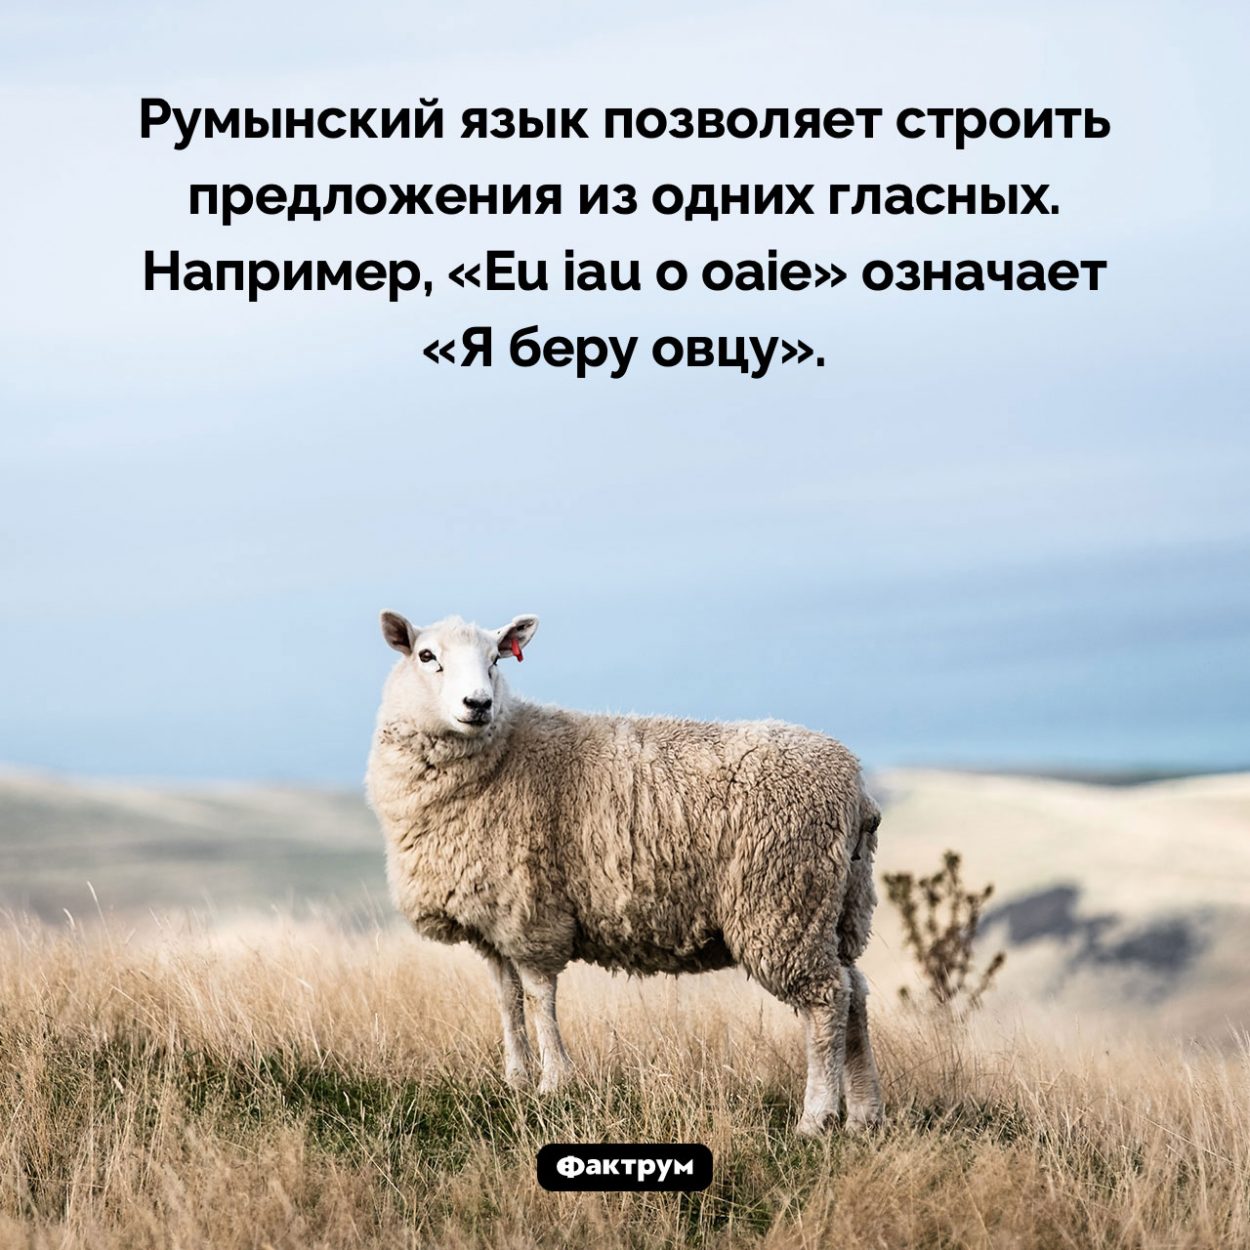 На каком языке можно строить предложения из одних гласных. Румынский язык позволяет строить предложения из одних гласных. Например, «Eu iau o oaie» означает «Я беру овцу».